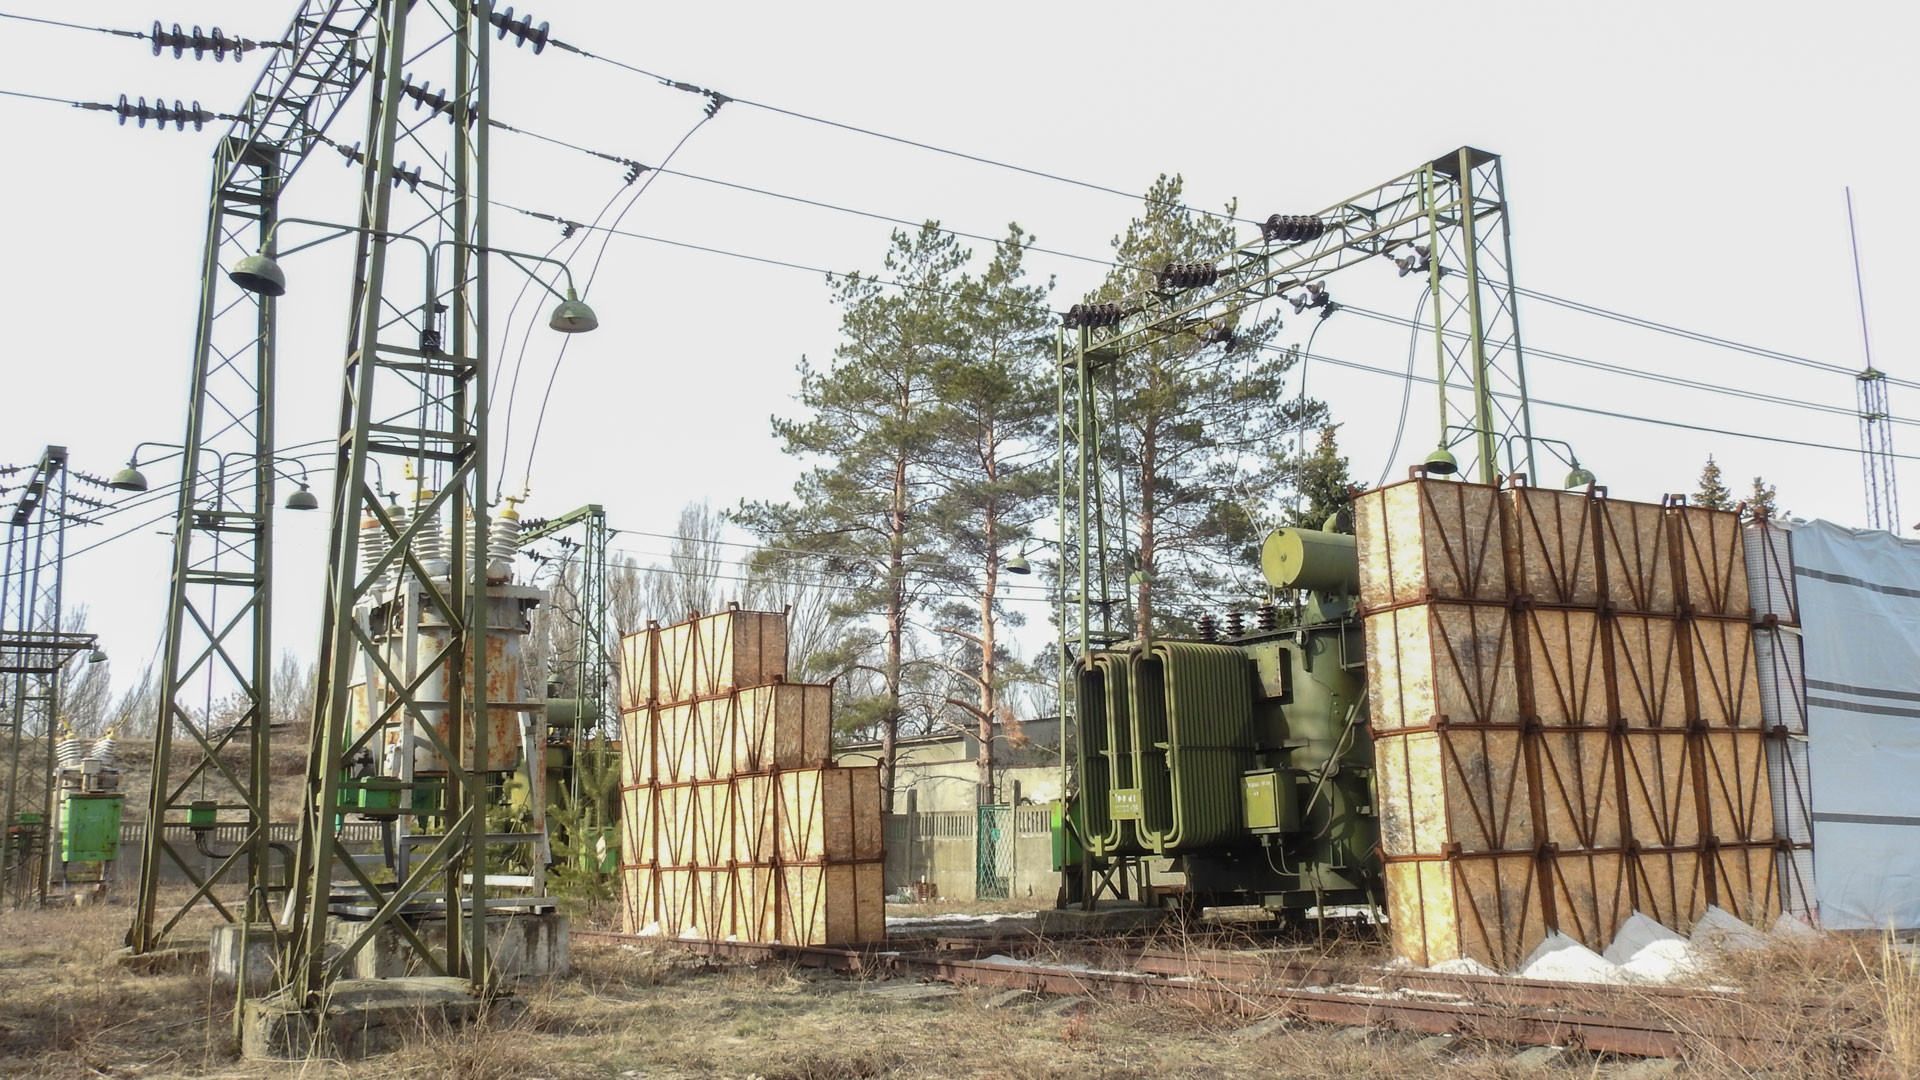 Ограждения, построенные сотрудниками насосной станции вокруг трансформаторов, питающих объект. Фото: © Станислав Обищенко